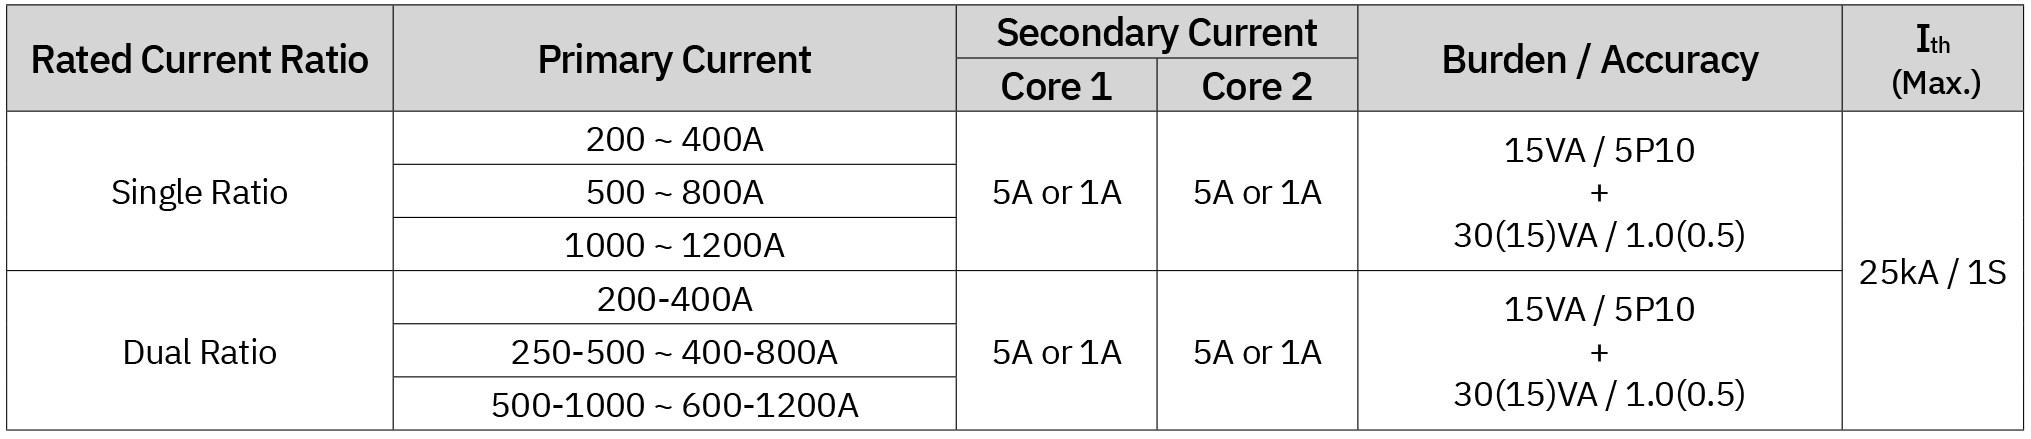 Tabela de especificações para transformador de corrente de resina epóxi de dois núcleos de 3,6 kV (ER-3C)